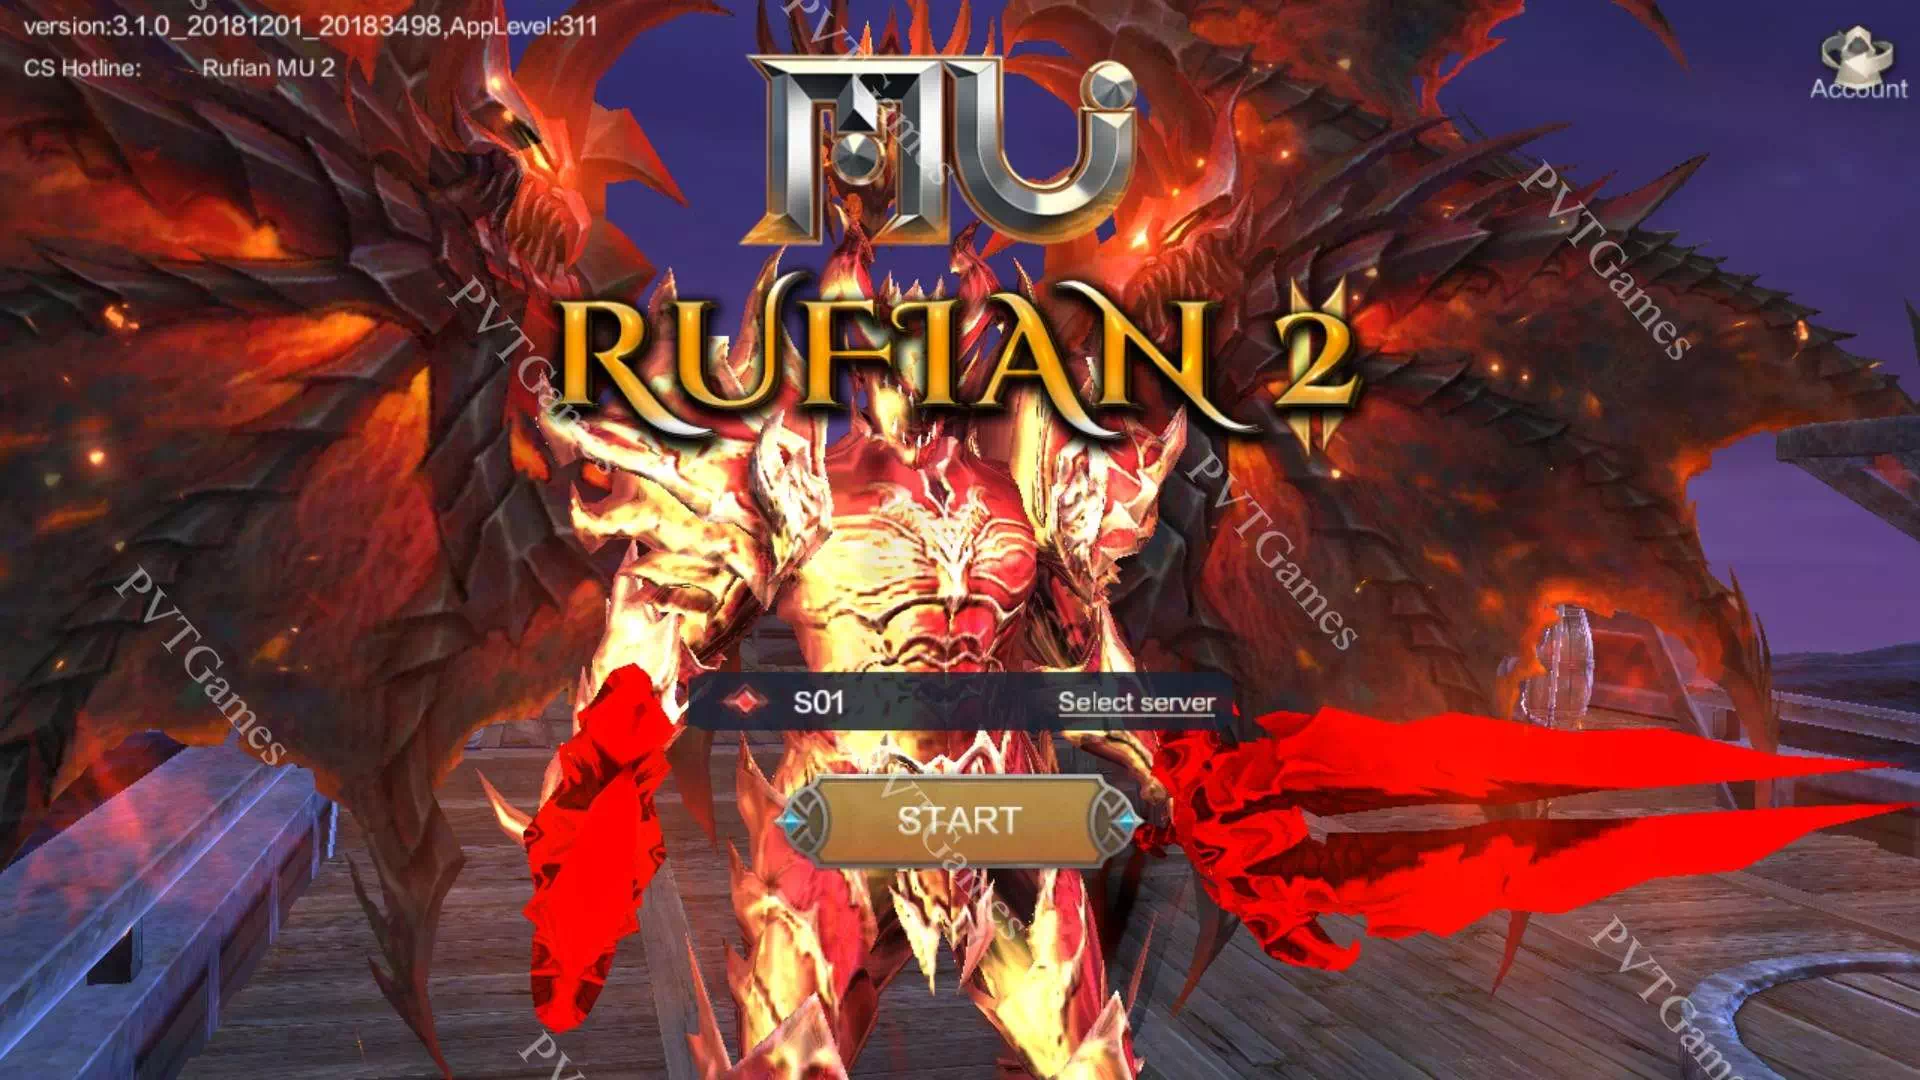 Rufian MU 2 Origin Private Server